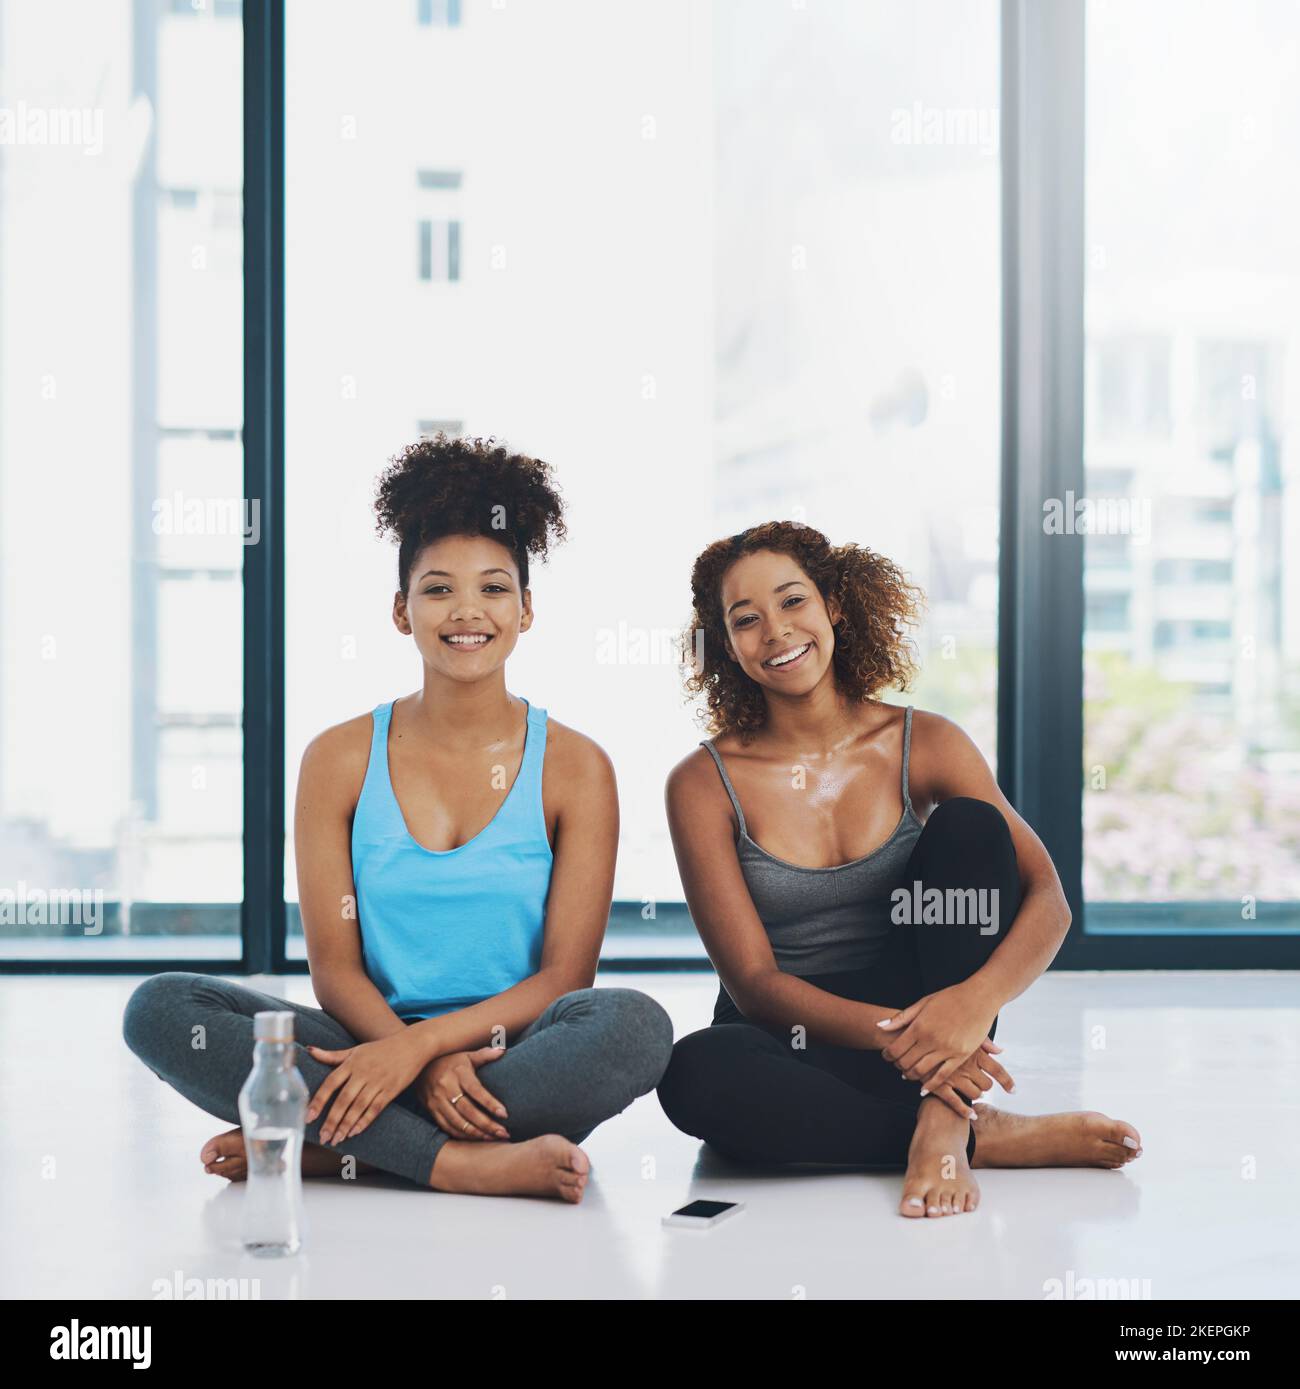 Eine kleine Pause machen. Portraitaufnahme von zwei jungen, fitfitfrauen Frauen, die sich auf dem Boden niedersetzen und vor einer Yoga-Sitzung in einem Studio ein Gespräch führen. Stockfoto